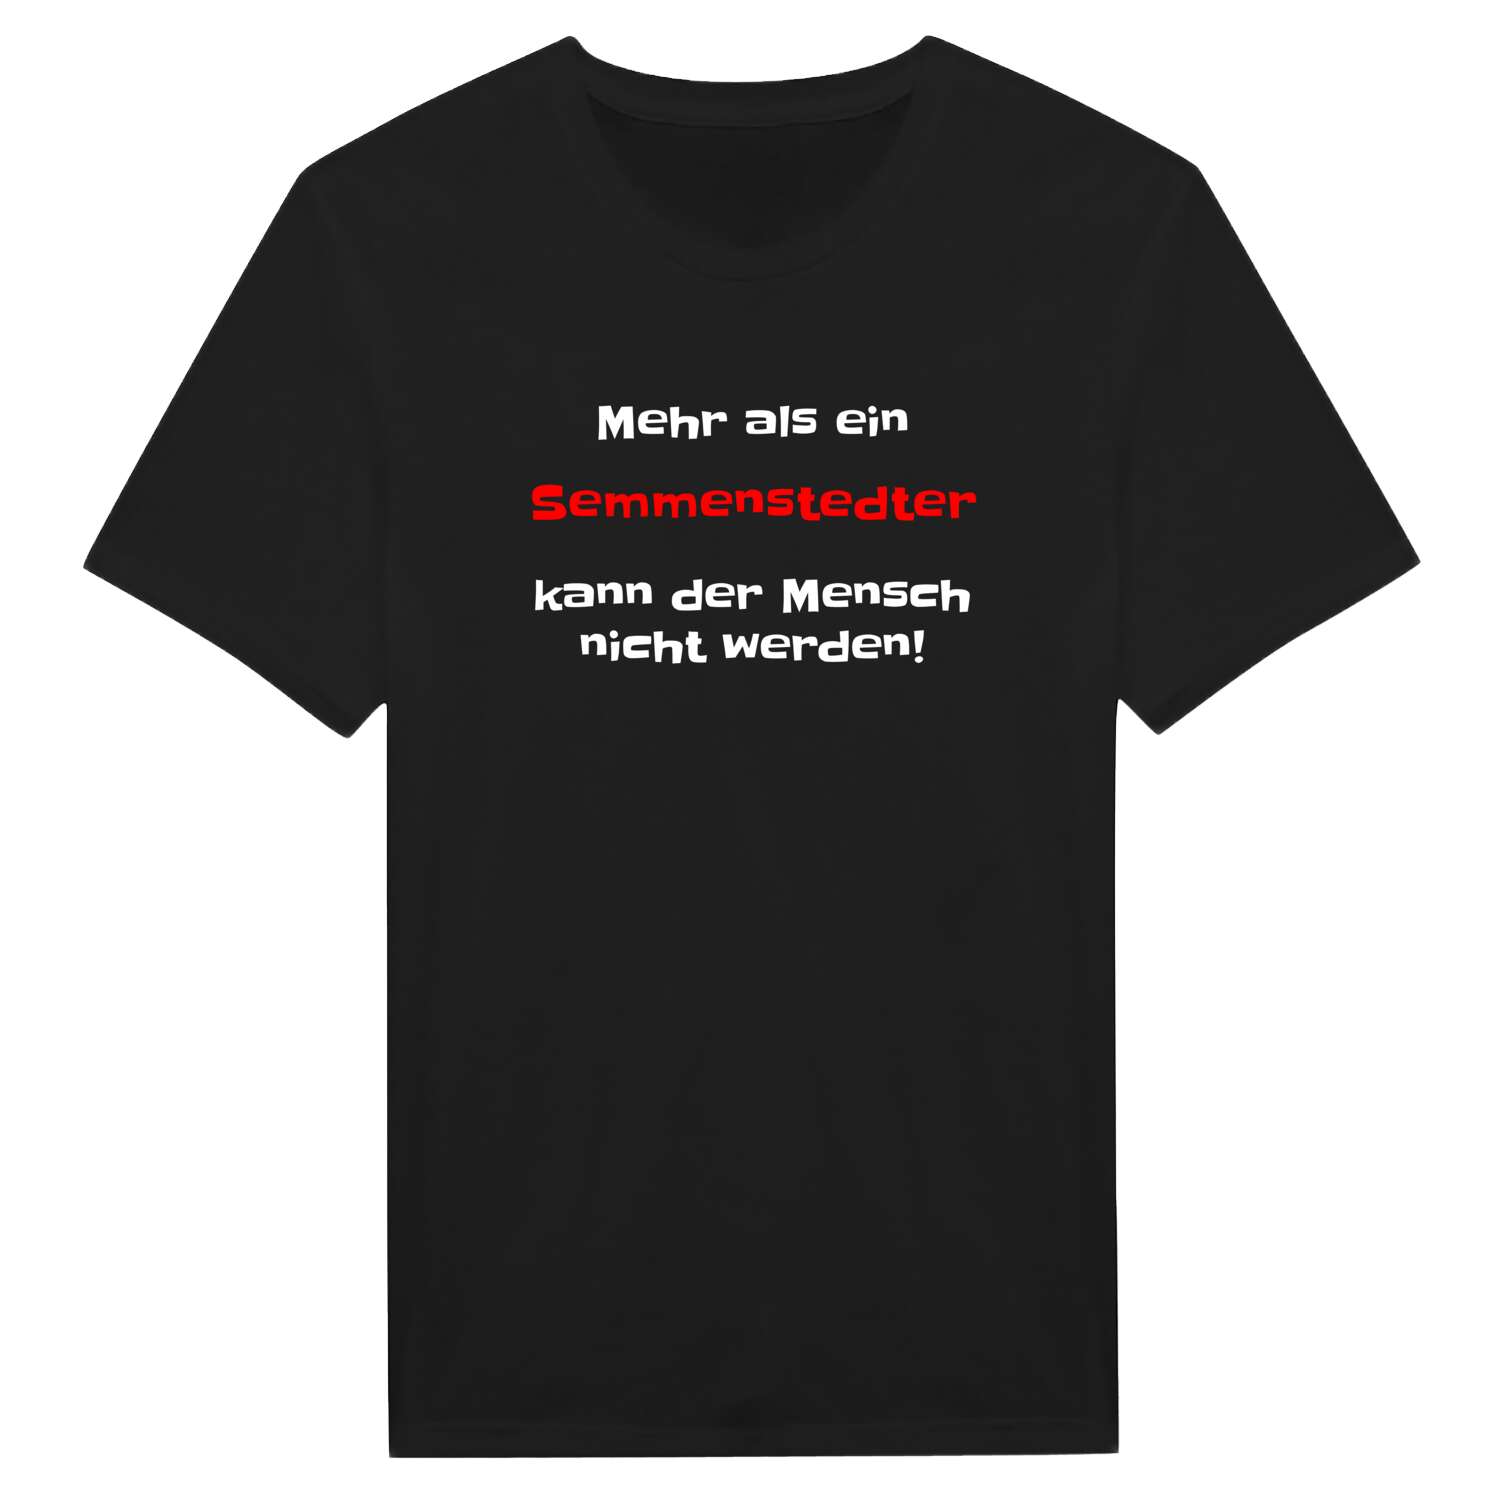 Semmenstedt T-Shirt »Mehr als ein«